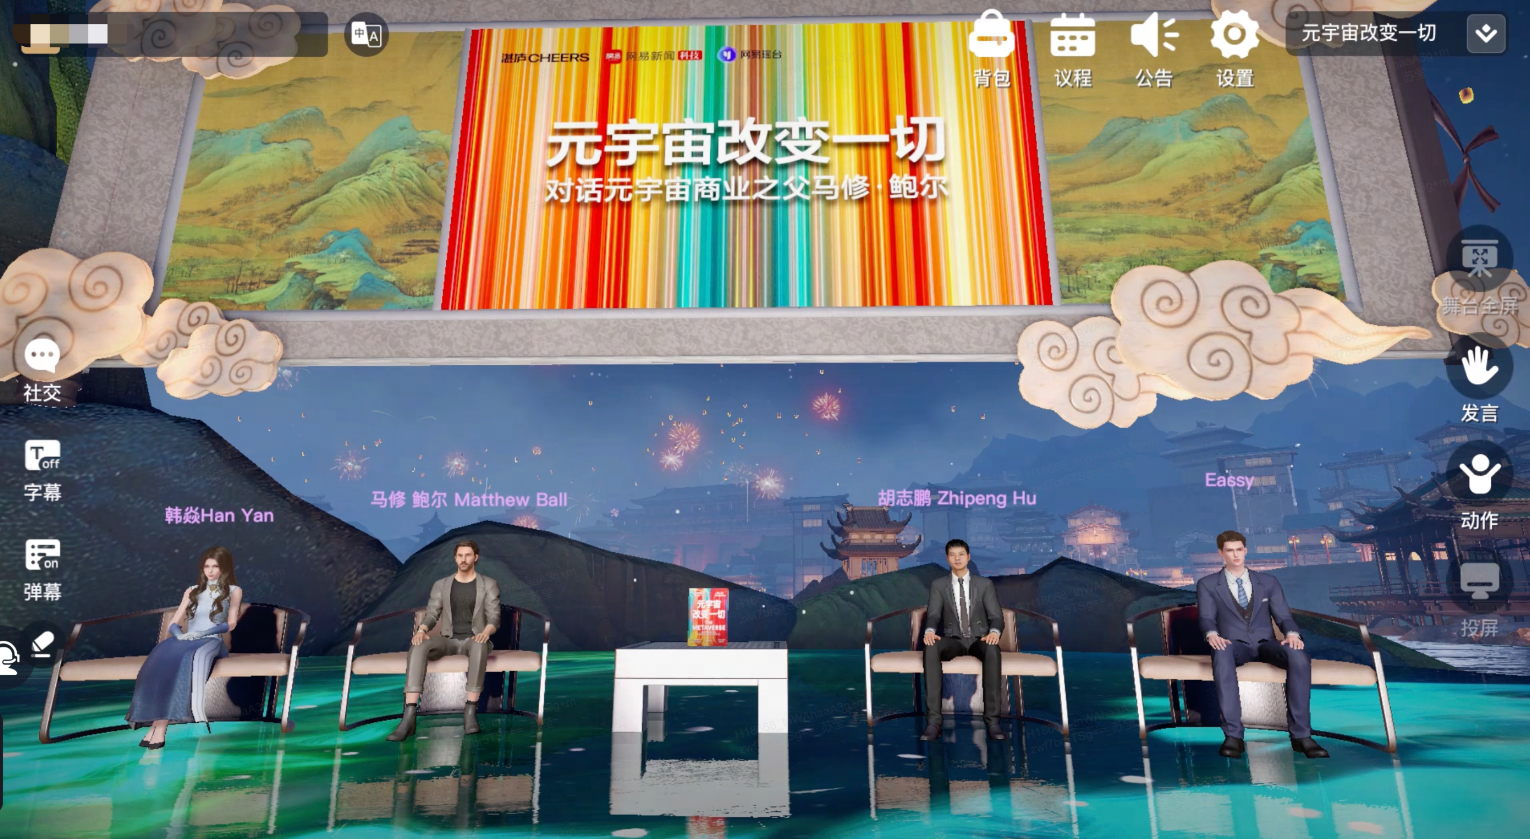 图片展示了四位嘉宾坐在虚拟演播室内，背景是中国风的山水画，下方有观众互动的弹幕。